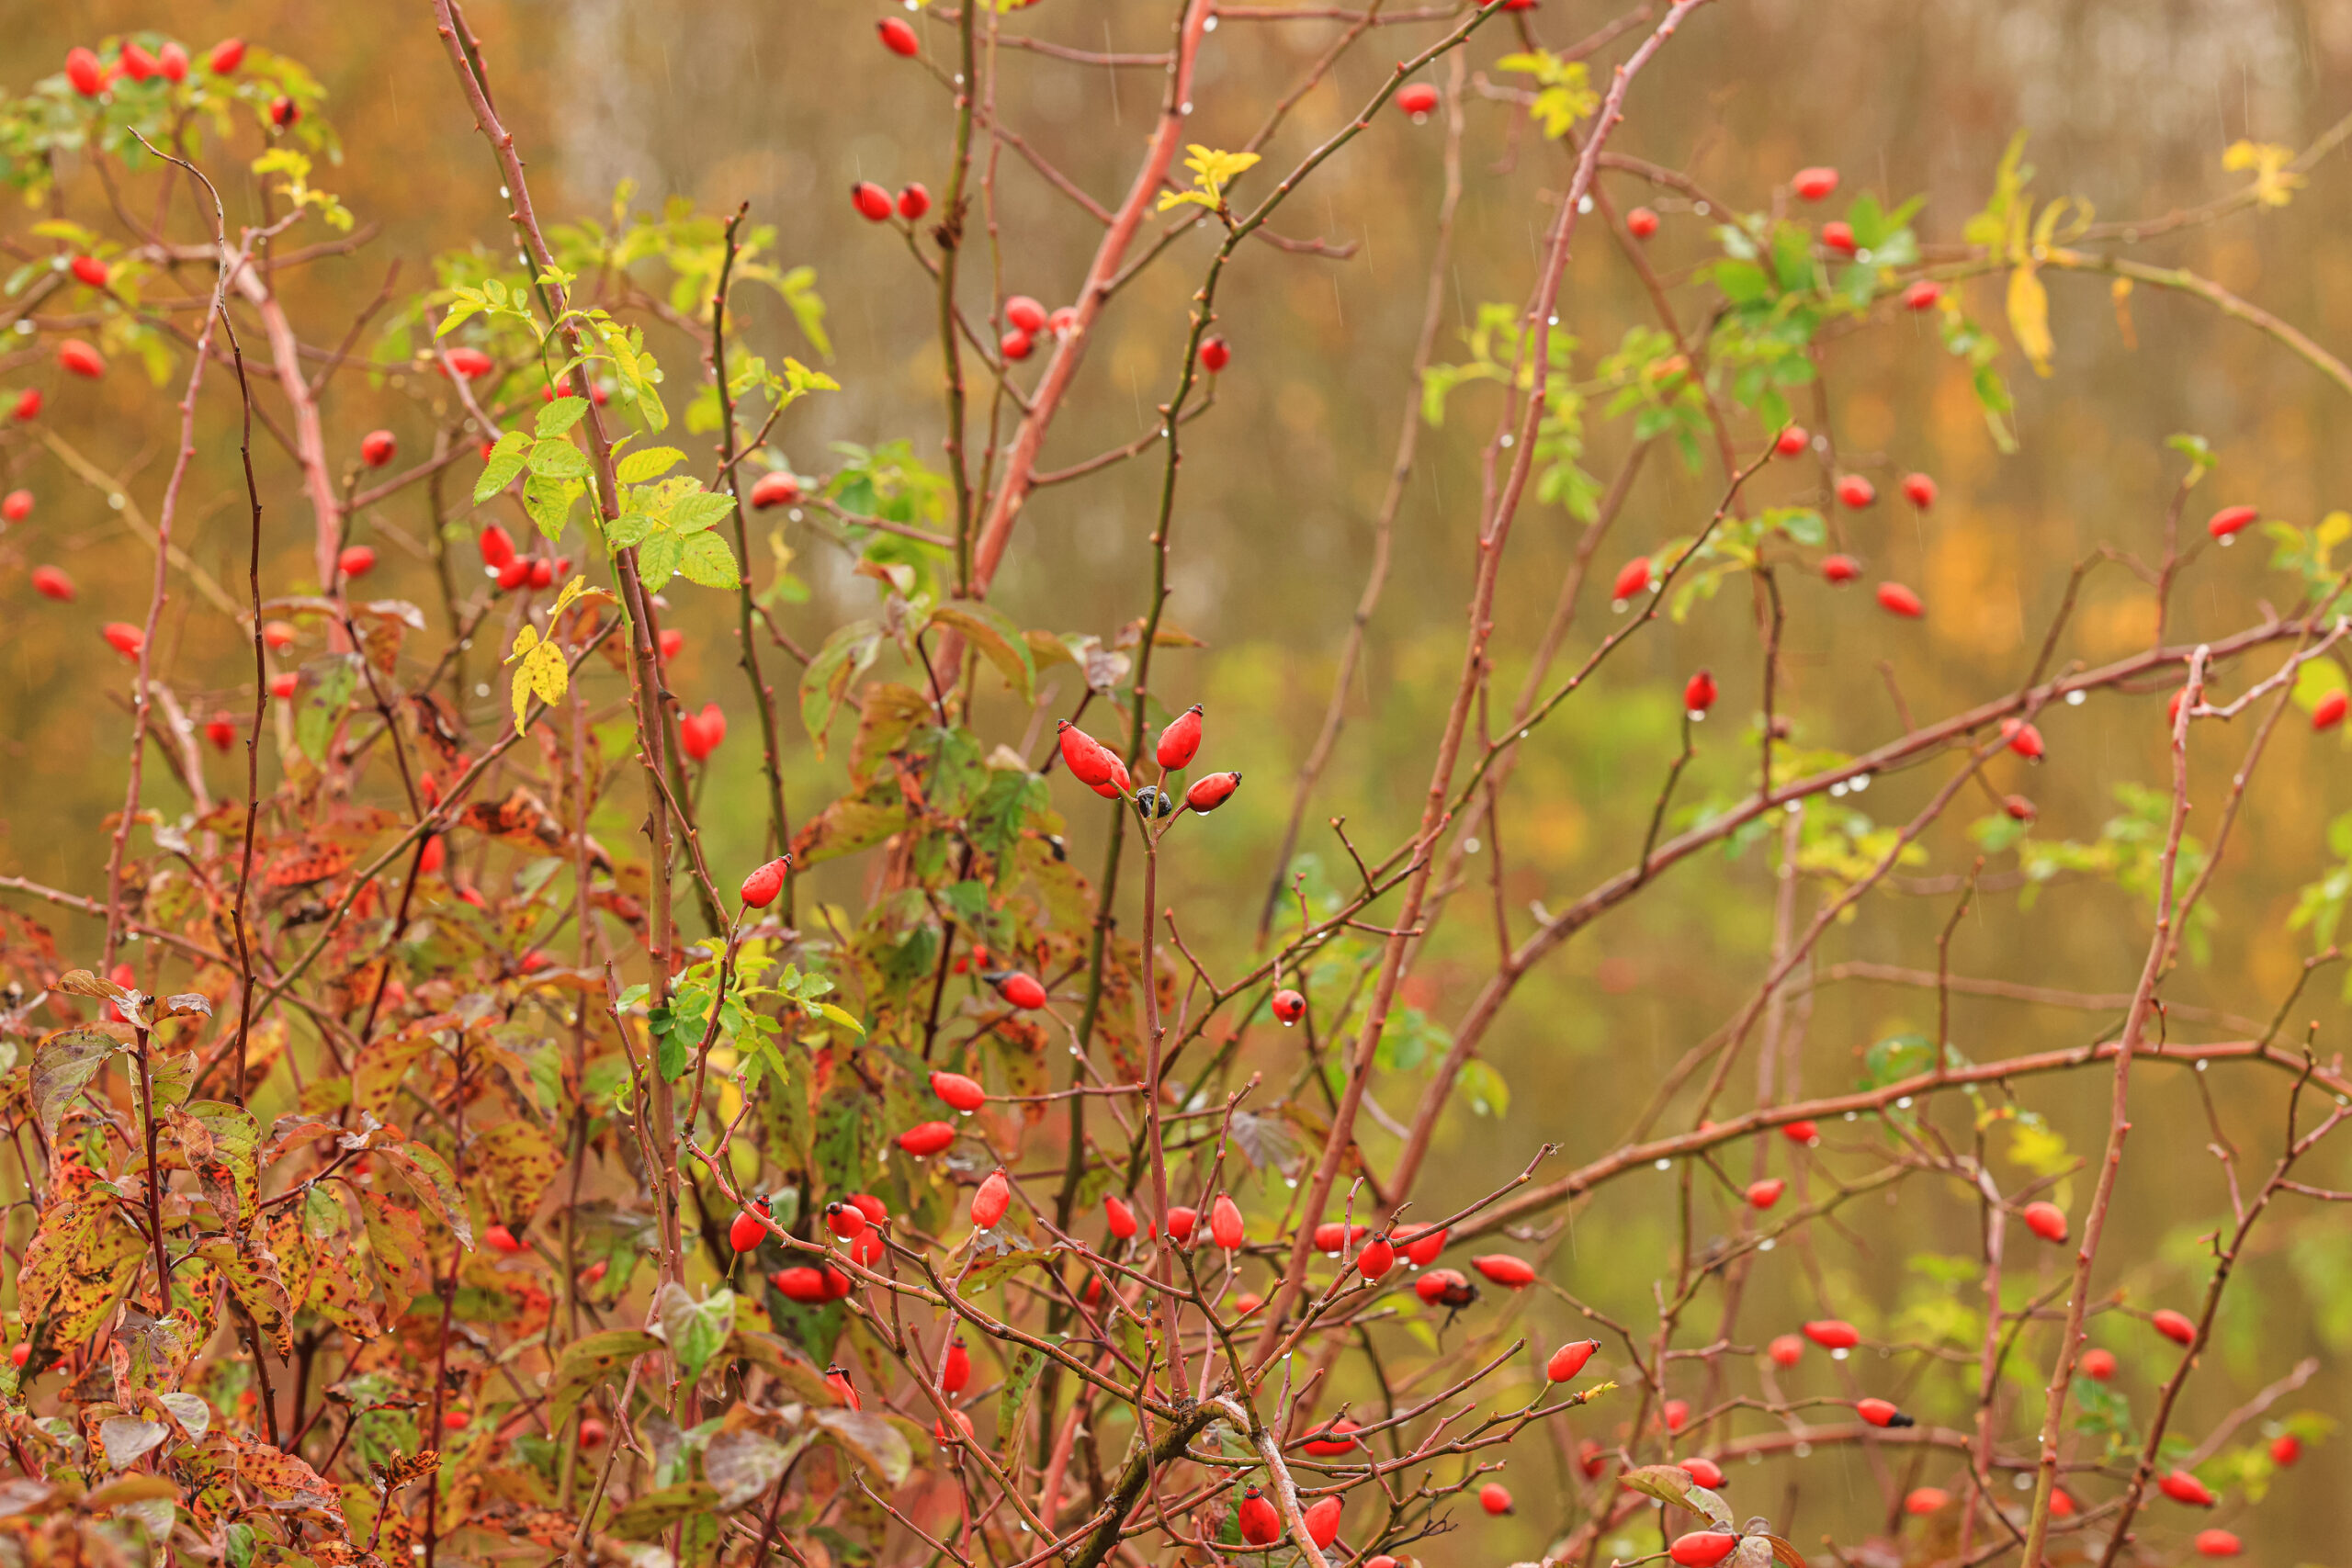 <h1>Růže šípková <i>(Rosa canina)</i></h1><br />
Pohled do šípkového keře, viditelné větve s červenými šípky a zbytky olistění. Podzimní výjev.